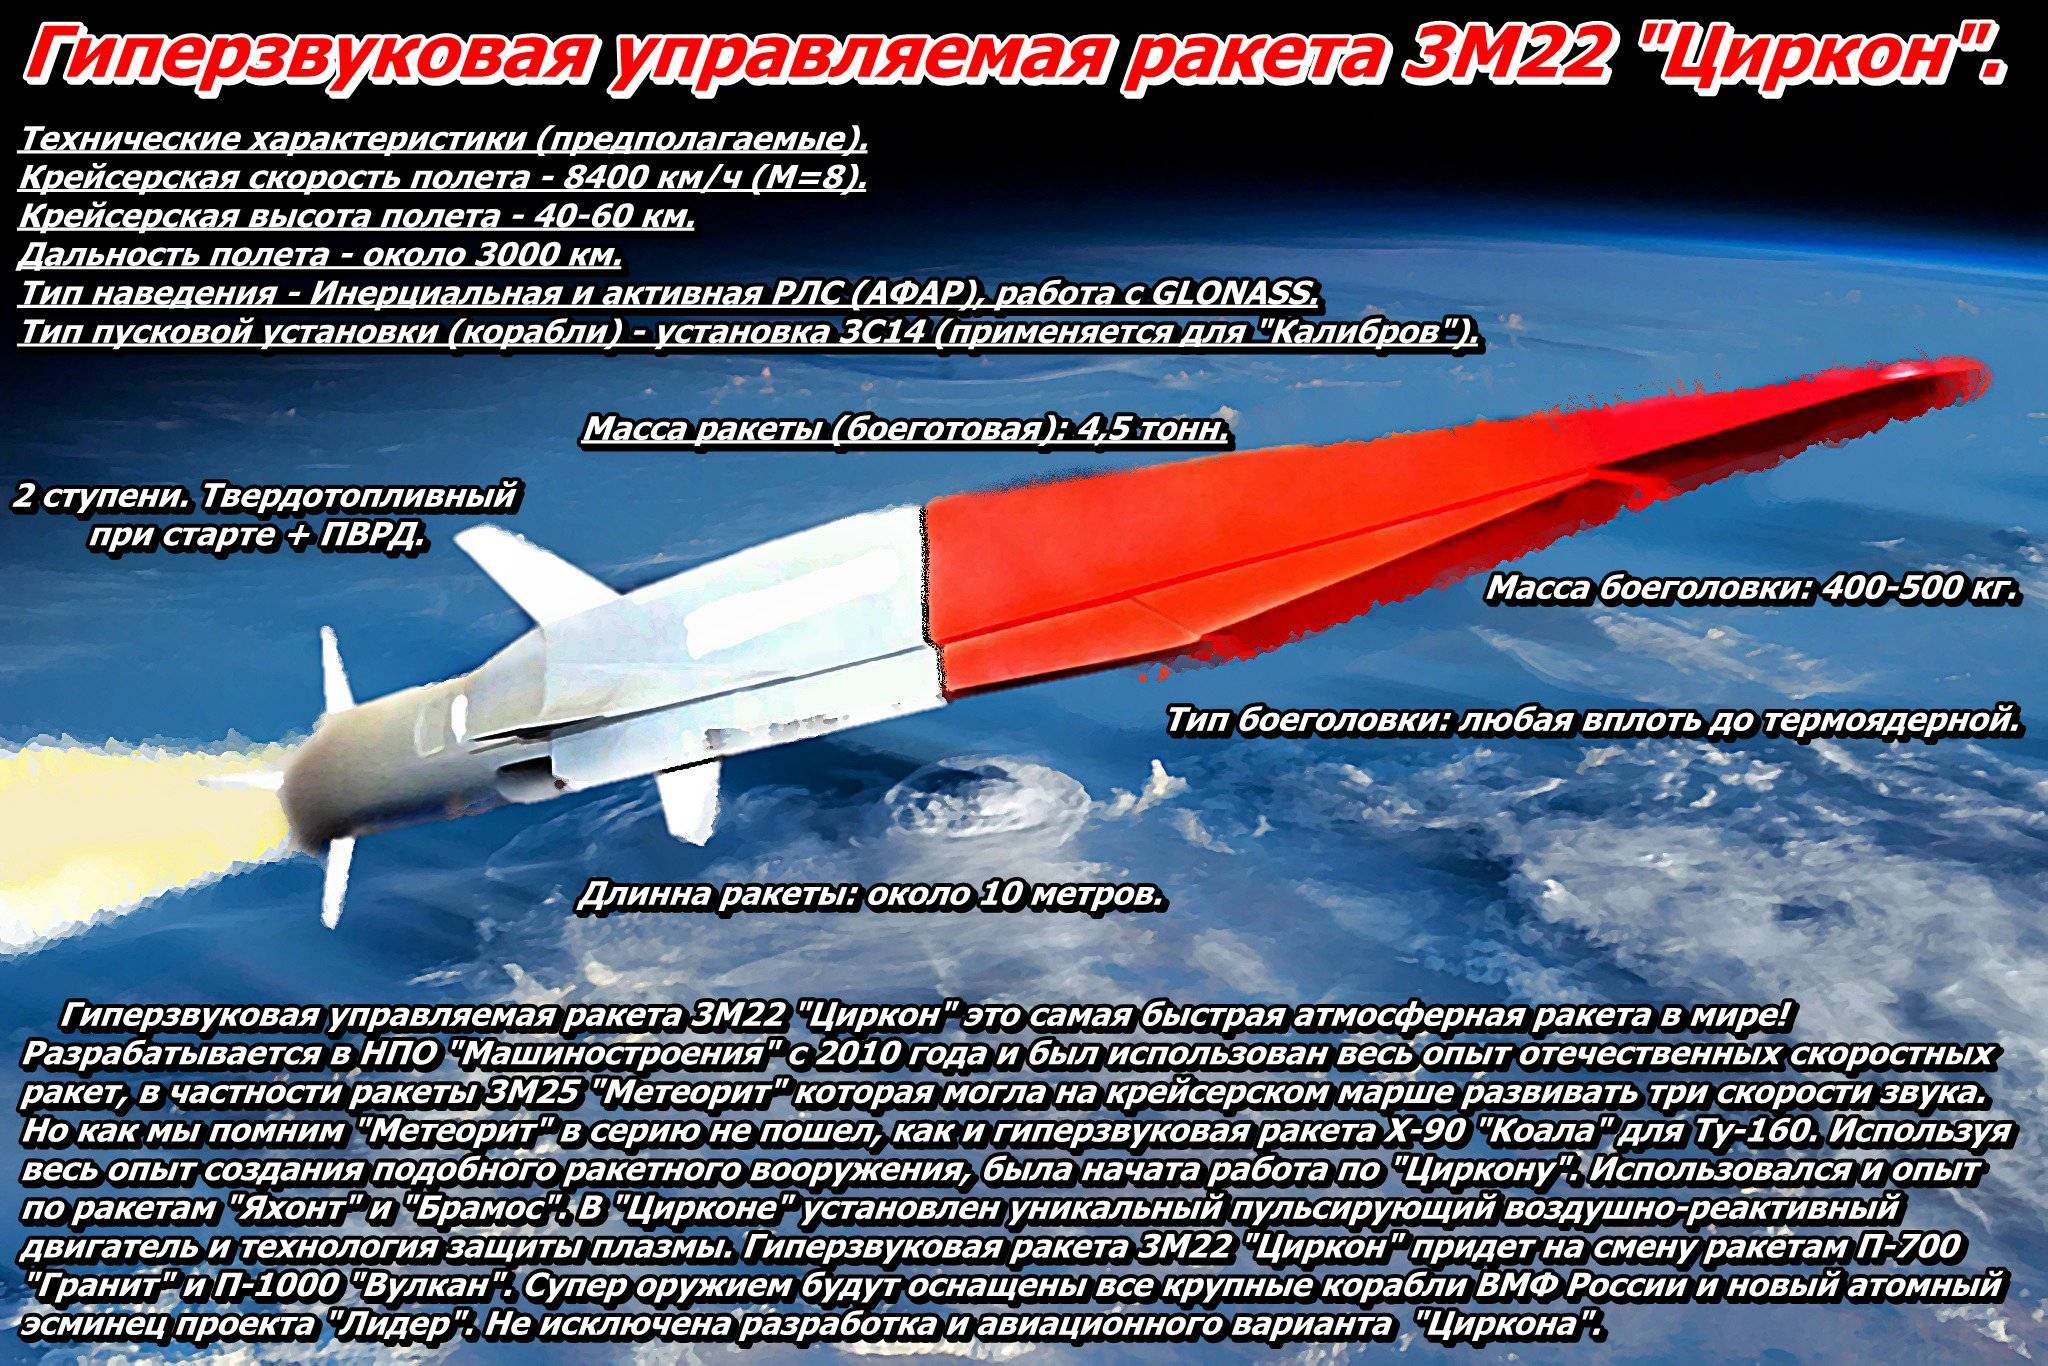 Опаснее «калибра»: россия начала испытание гиперзвуковой ракеты «циркон» - газета труд